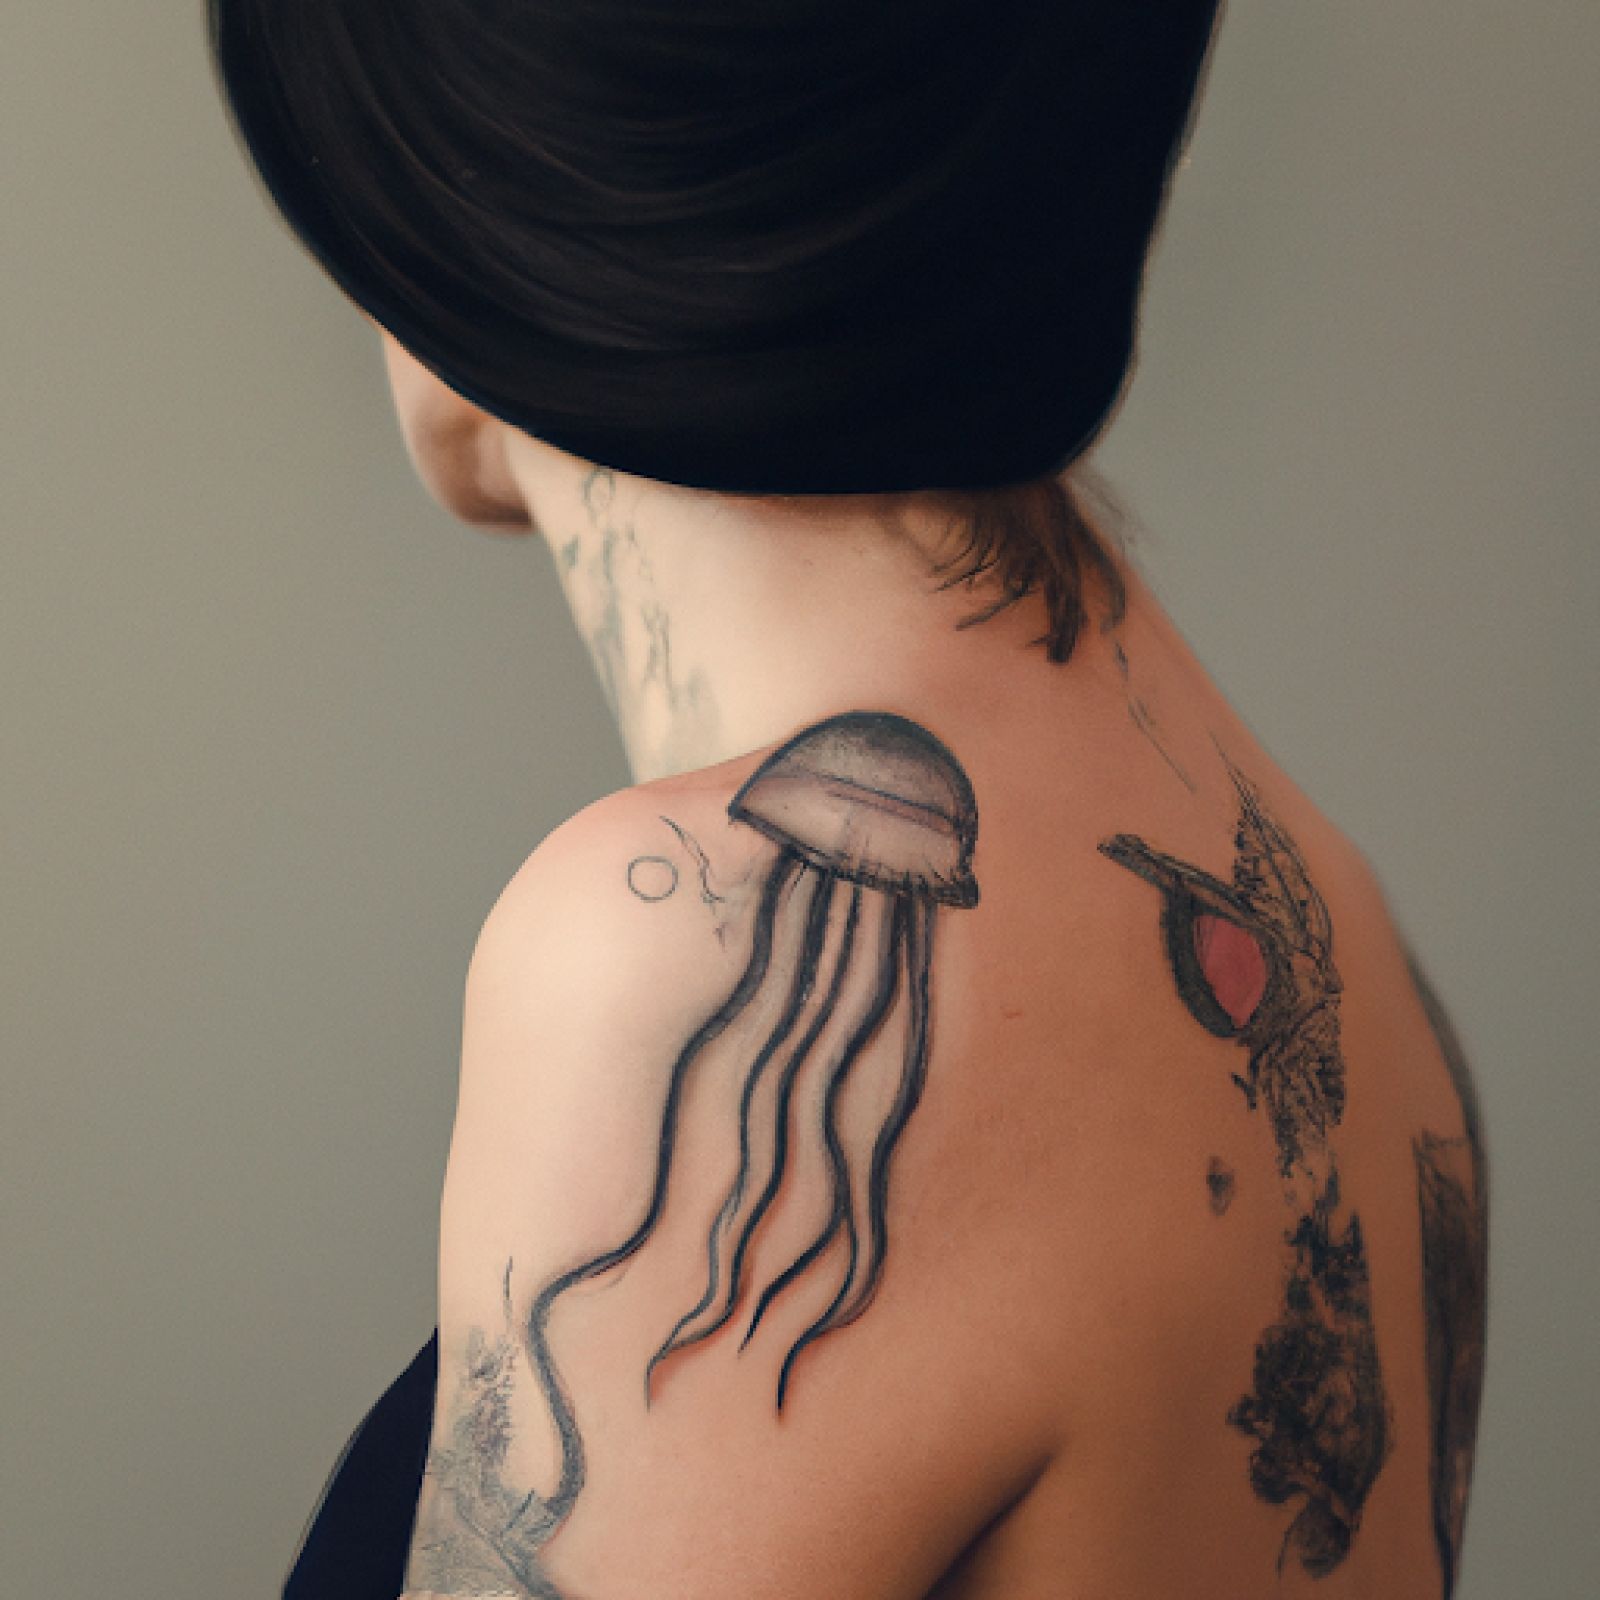 Medusa tattoo on shoulder for women